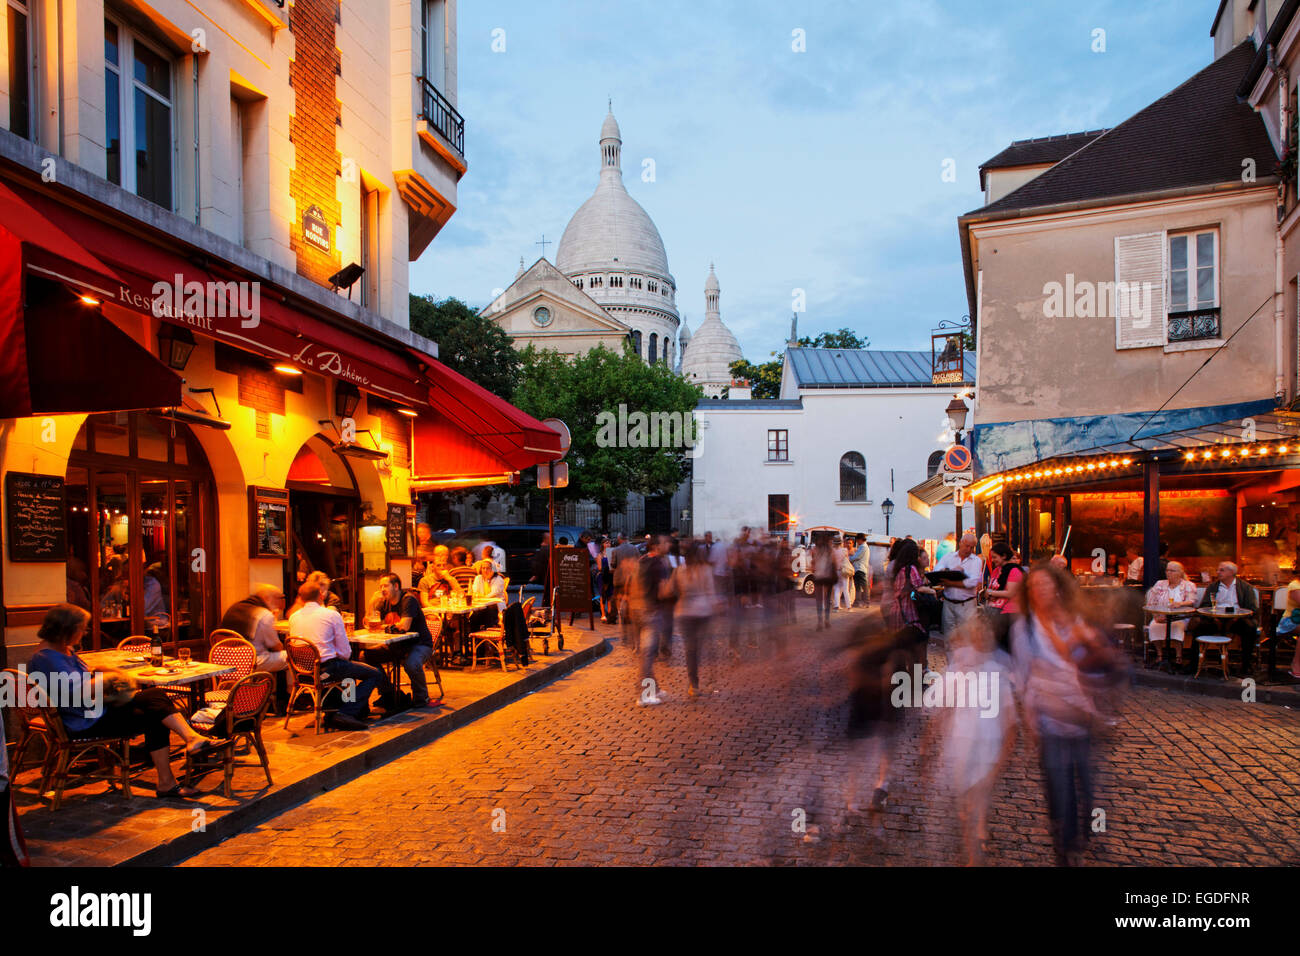 Place du Tertre and Sacre Coeur basilica, Montmartre, Paris, France Stock Photo